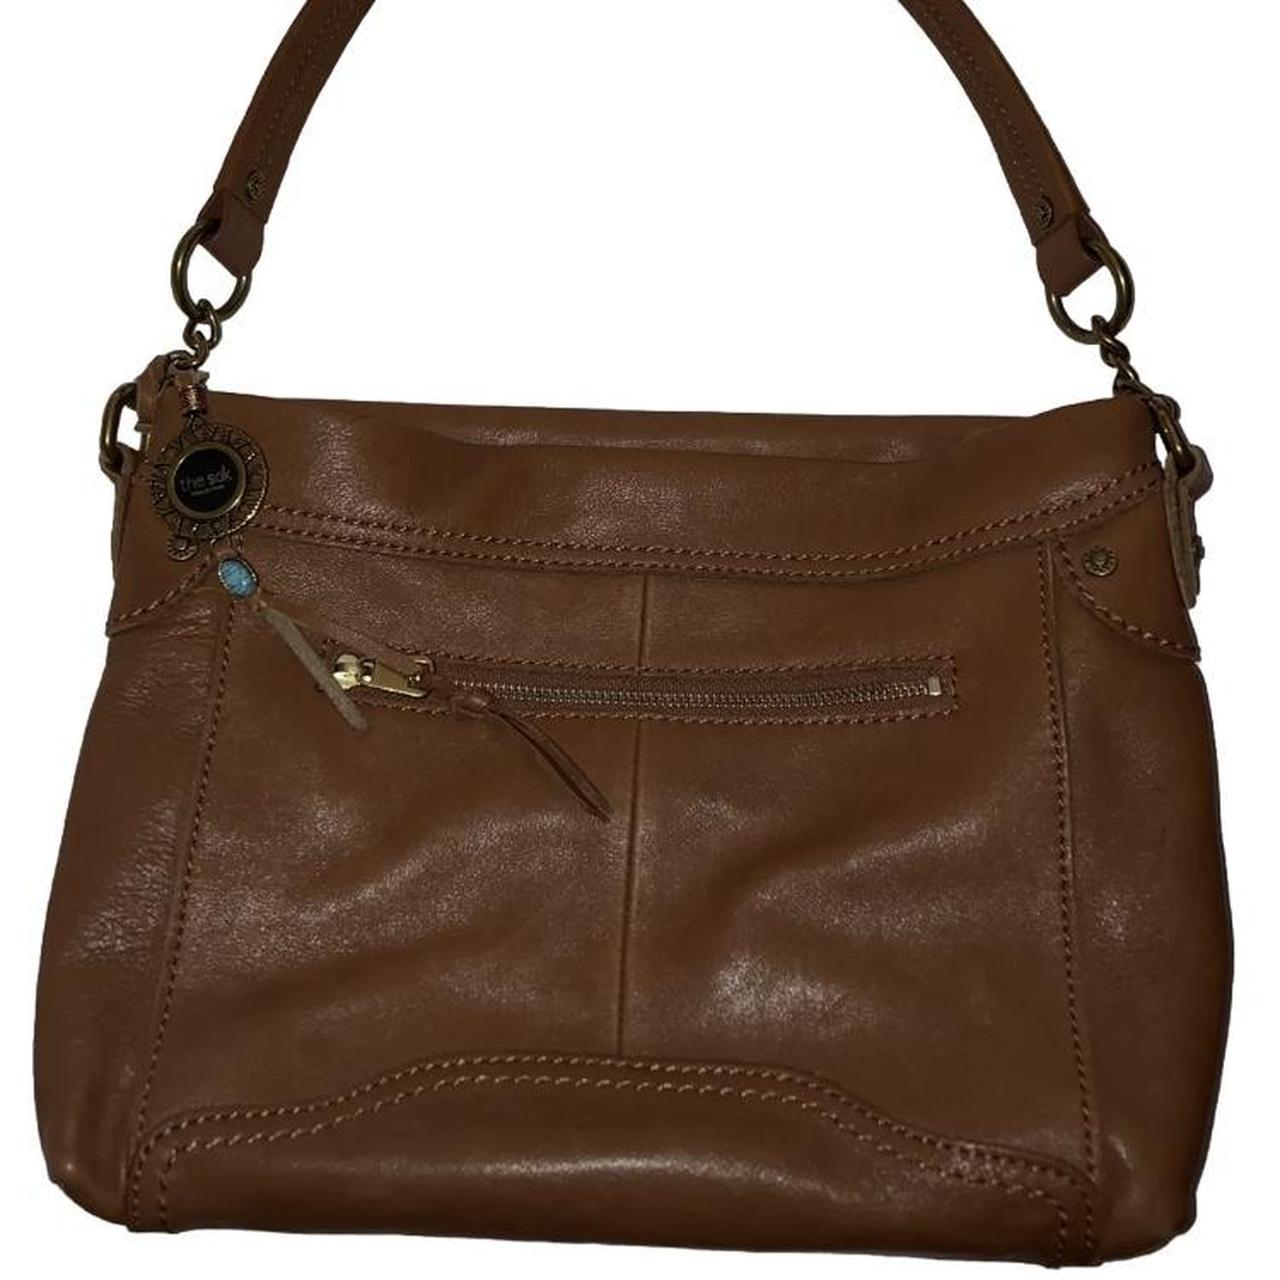 THE SAK SHOULDER Bag Brown Women's Bag Cramped Suede/leaner Purse - Etsy